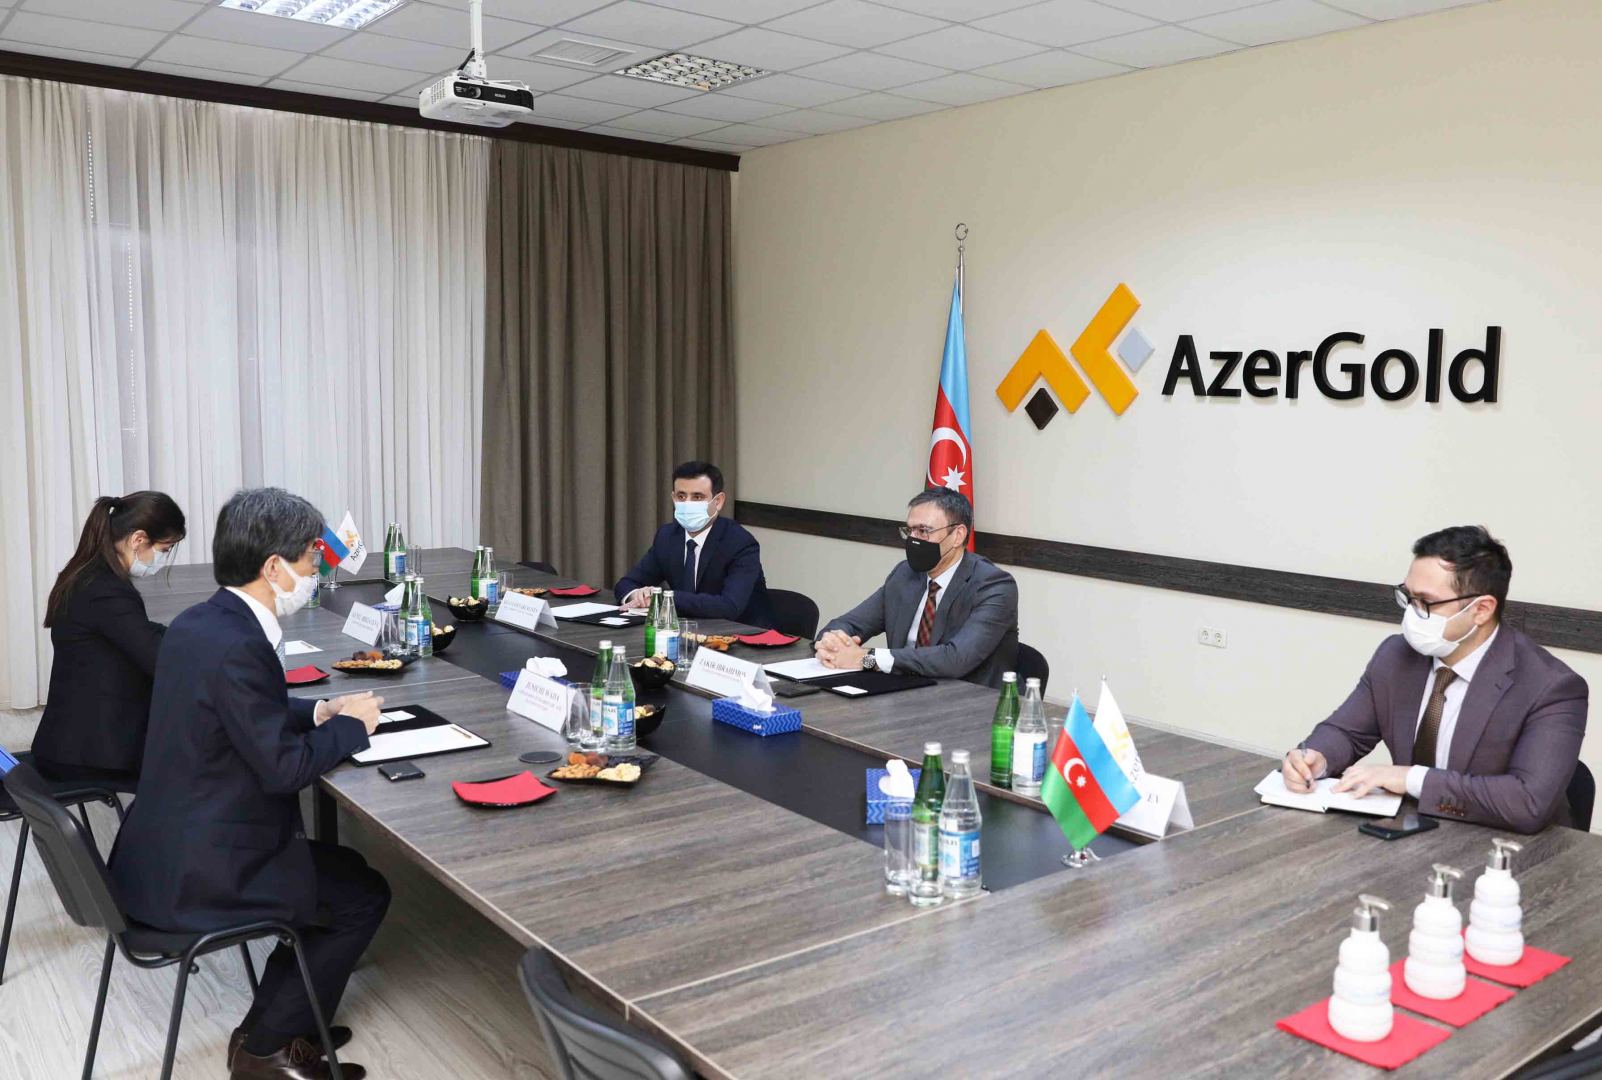 Состоялась встреча между ЗАО “AzerGold” и послом Японии в Азербайджане (ФОТО)